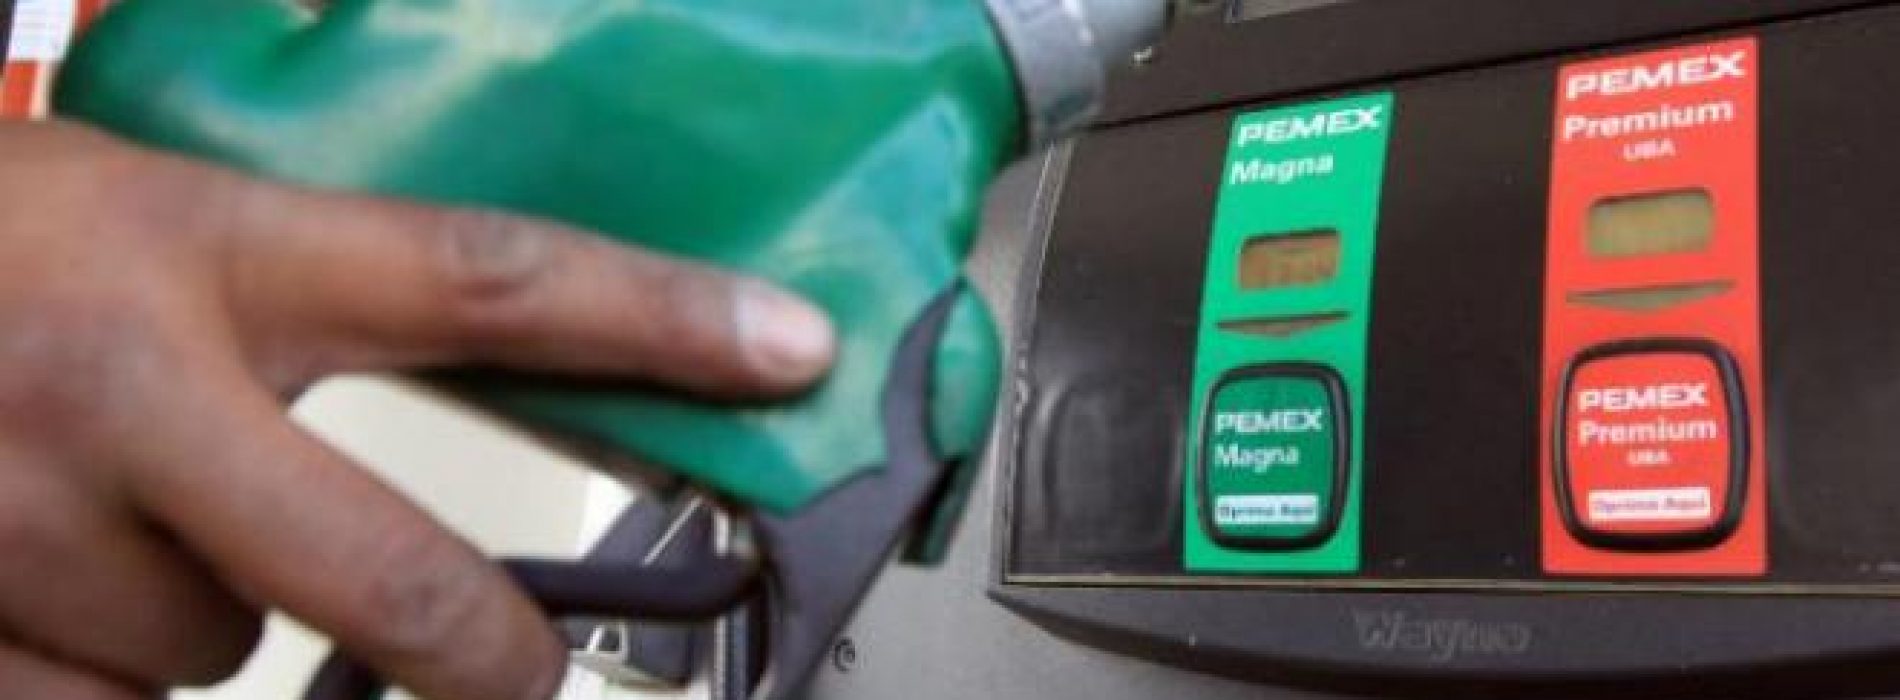 En 2020 habrá gasolinazo; subirán IEPS en premium y magna